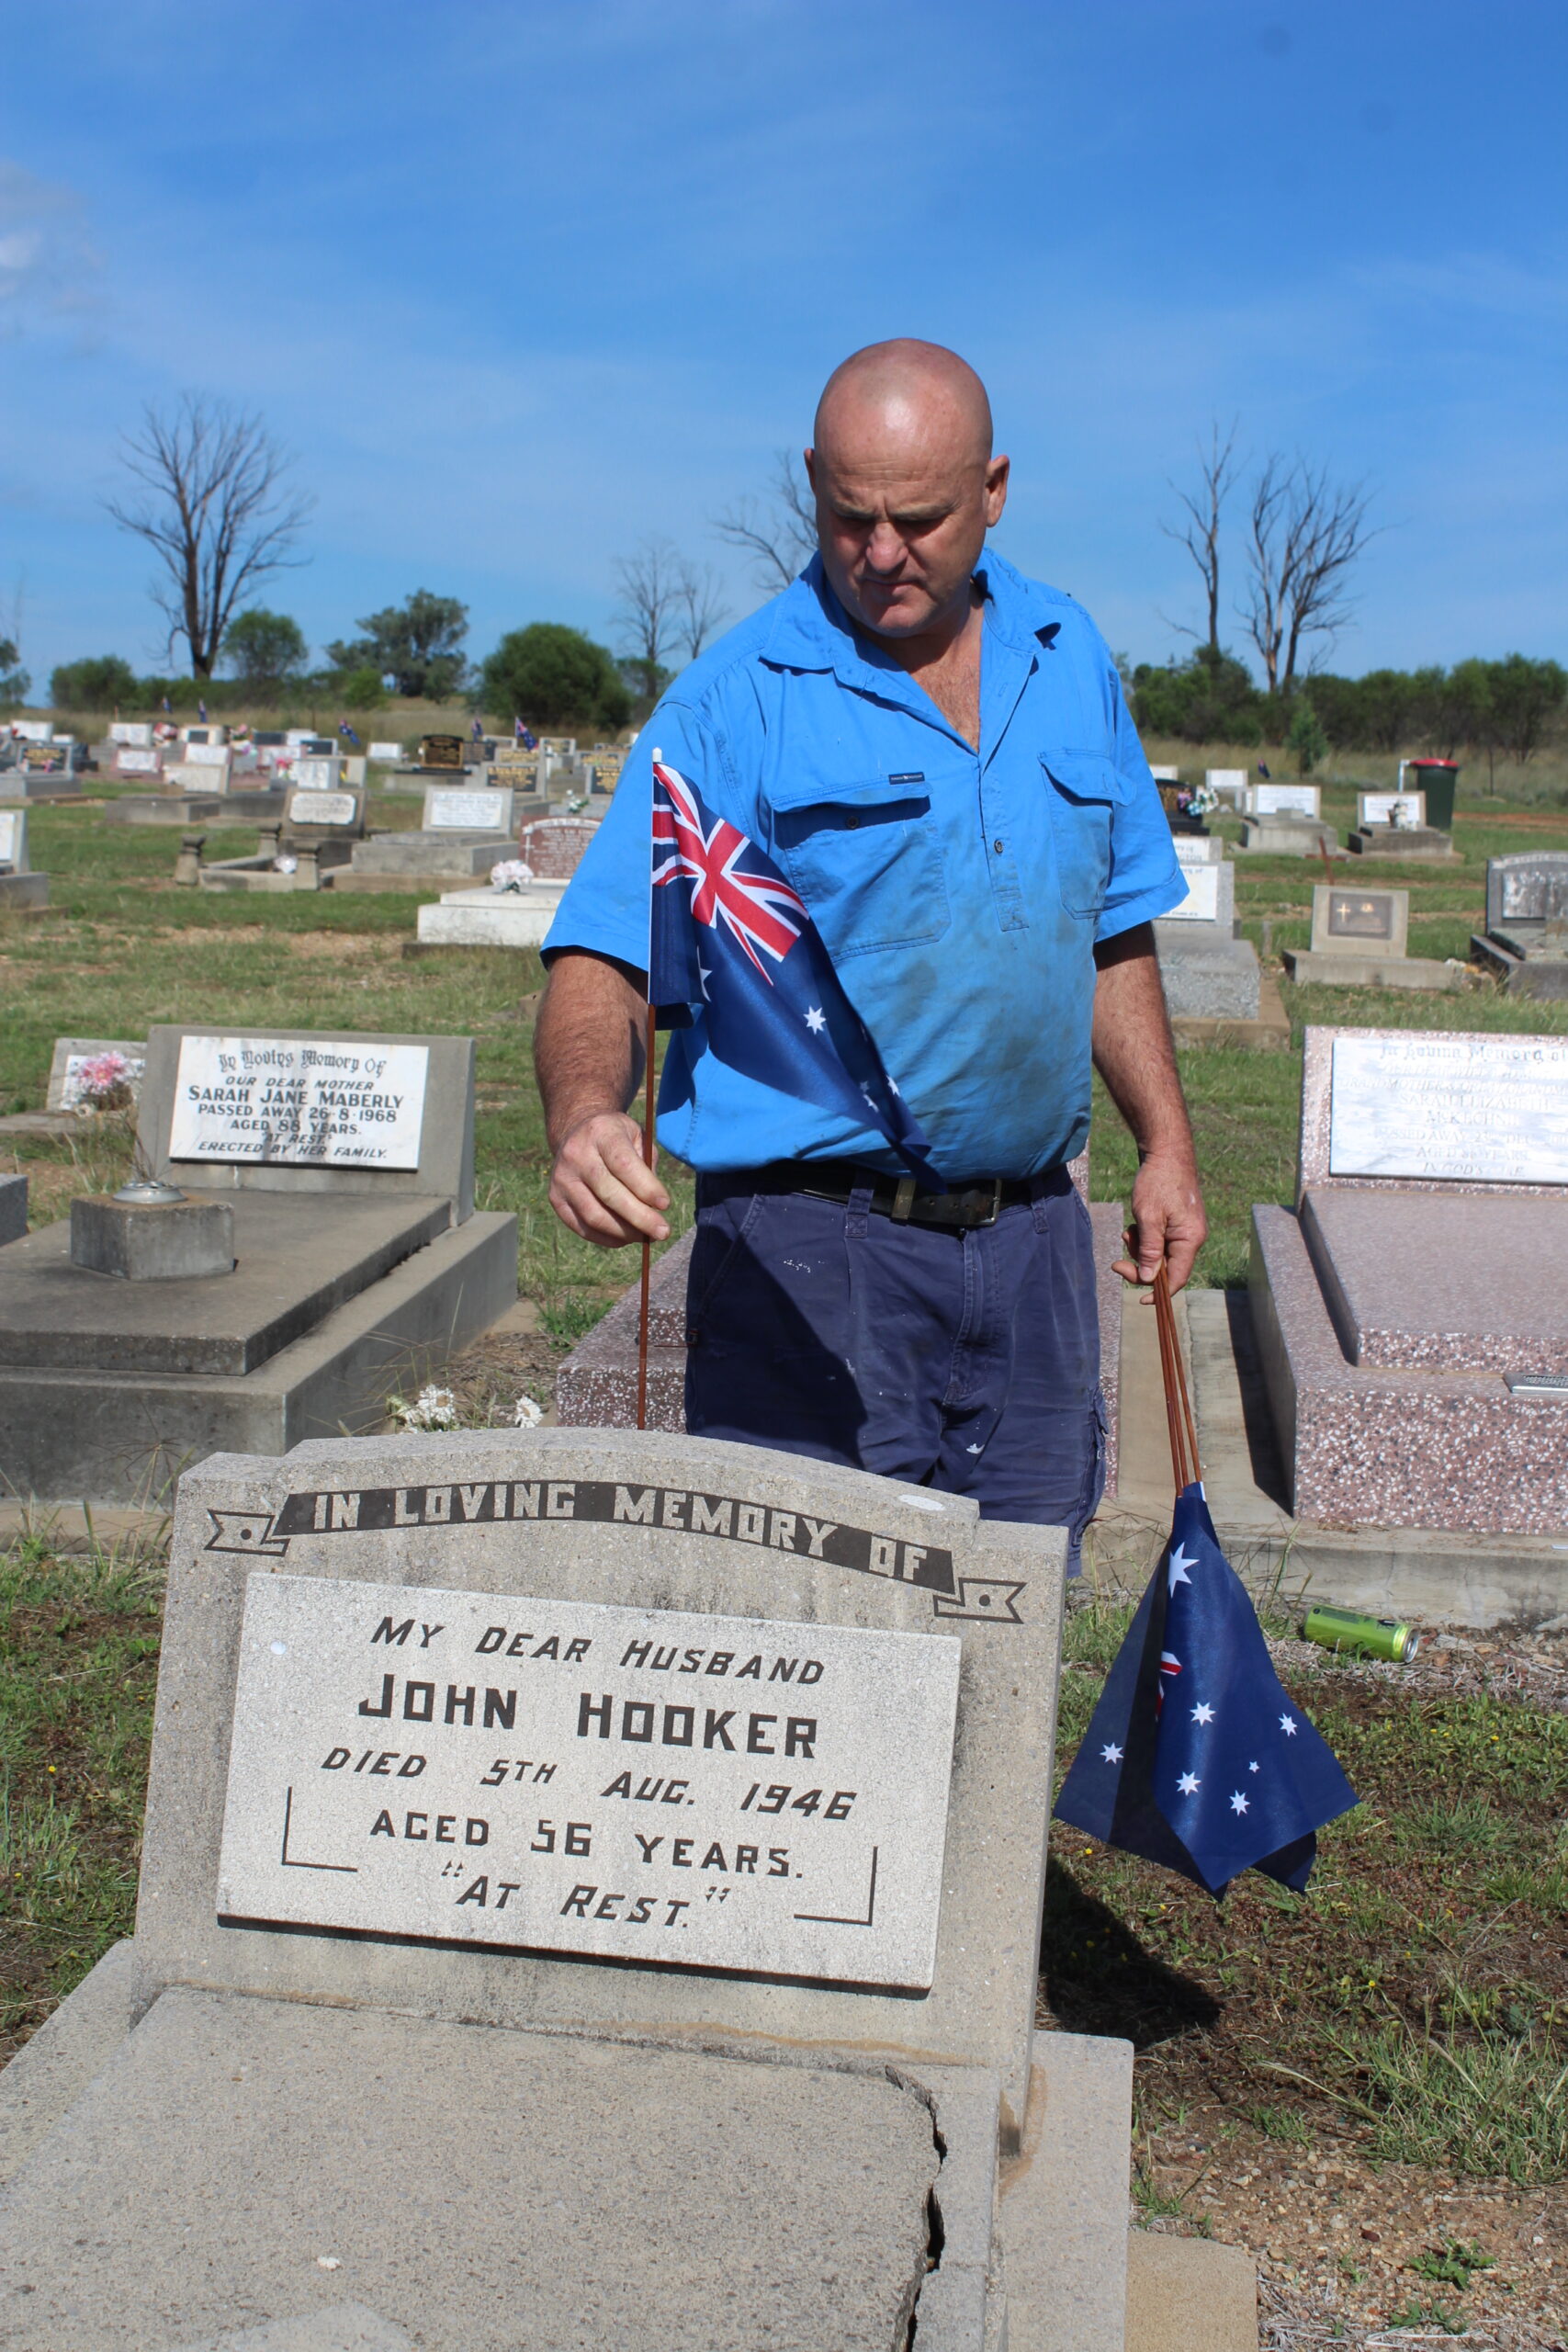 Leon Whelan placing a flag on John Hooker’s grave.